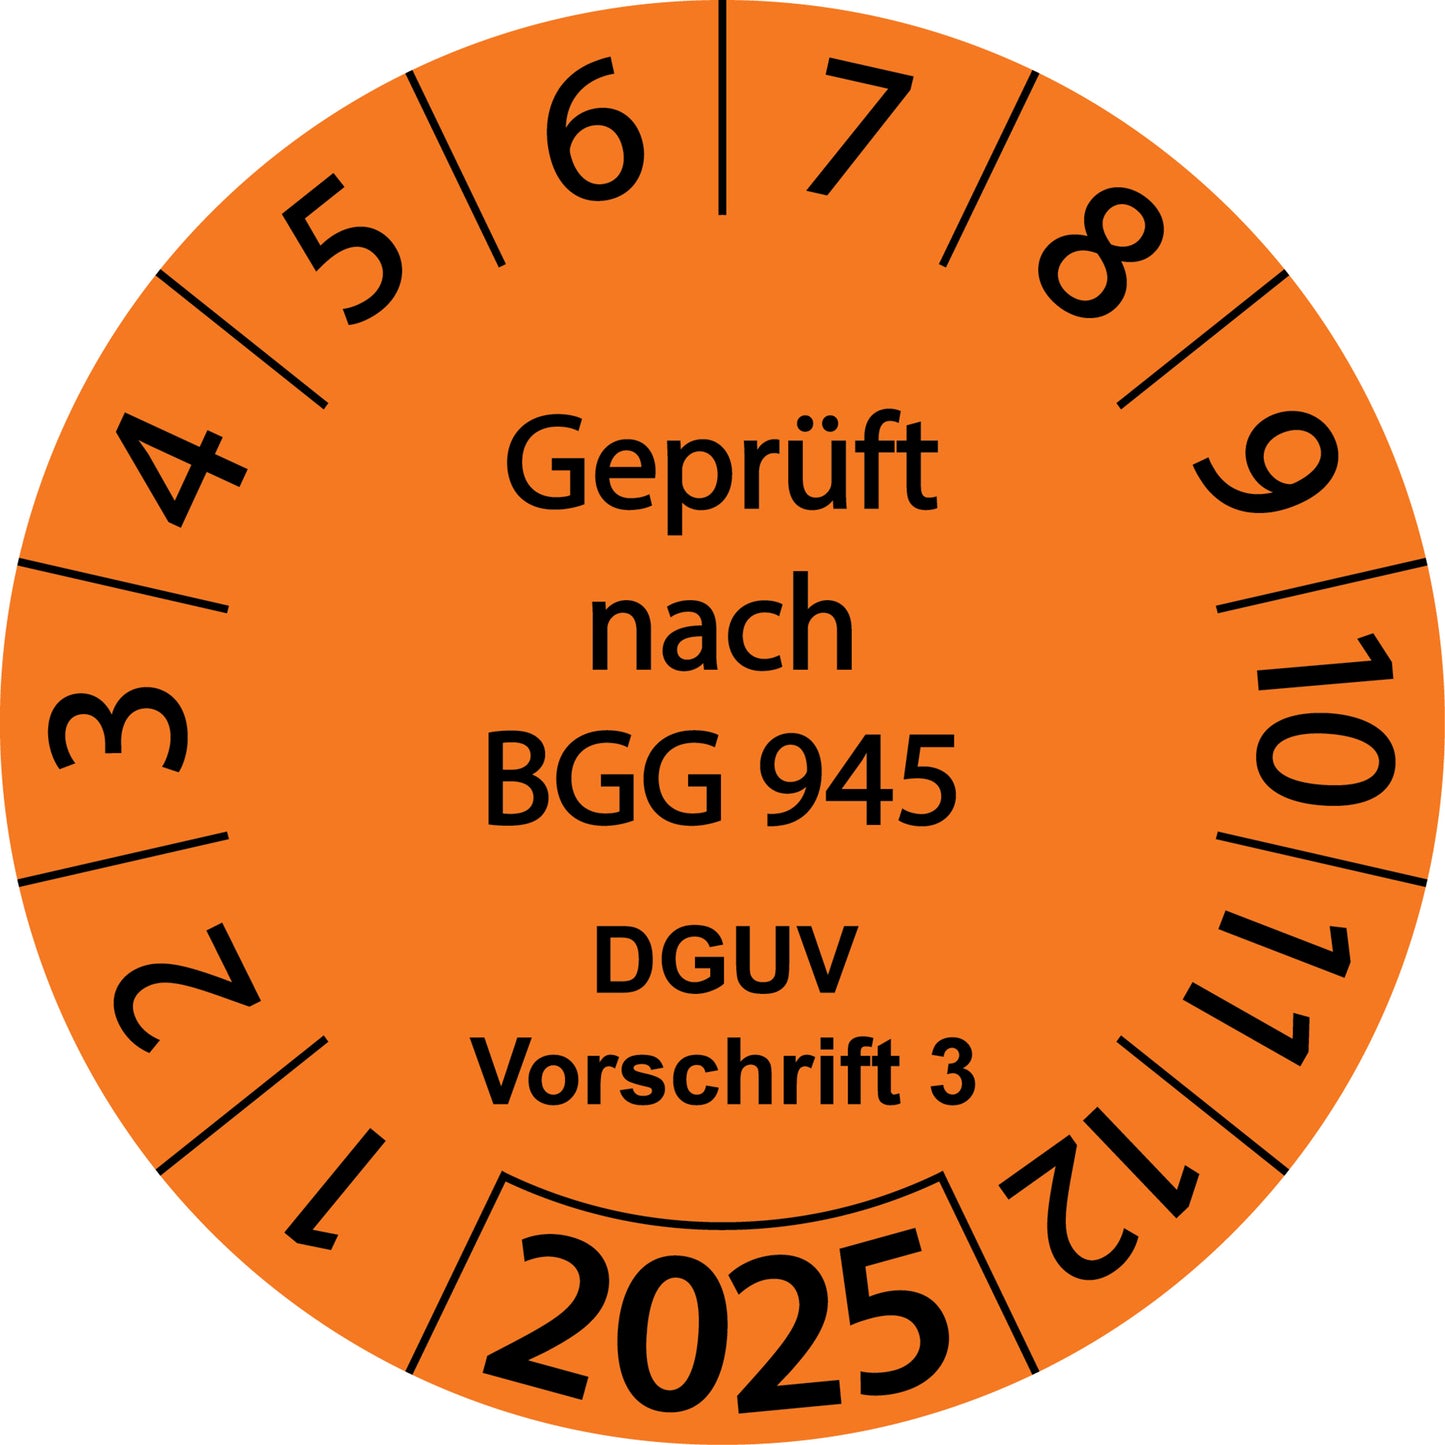 Einjahresprüfetiketten, Geprüft nach BGG 945, DGUV Vorschrift 3, Startjahr: 2025 aus Papier oder Plastik